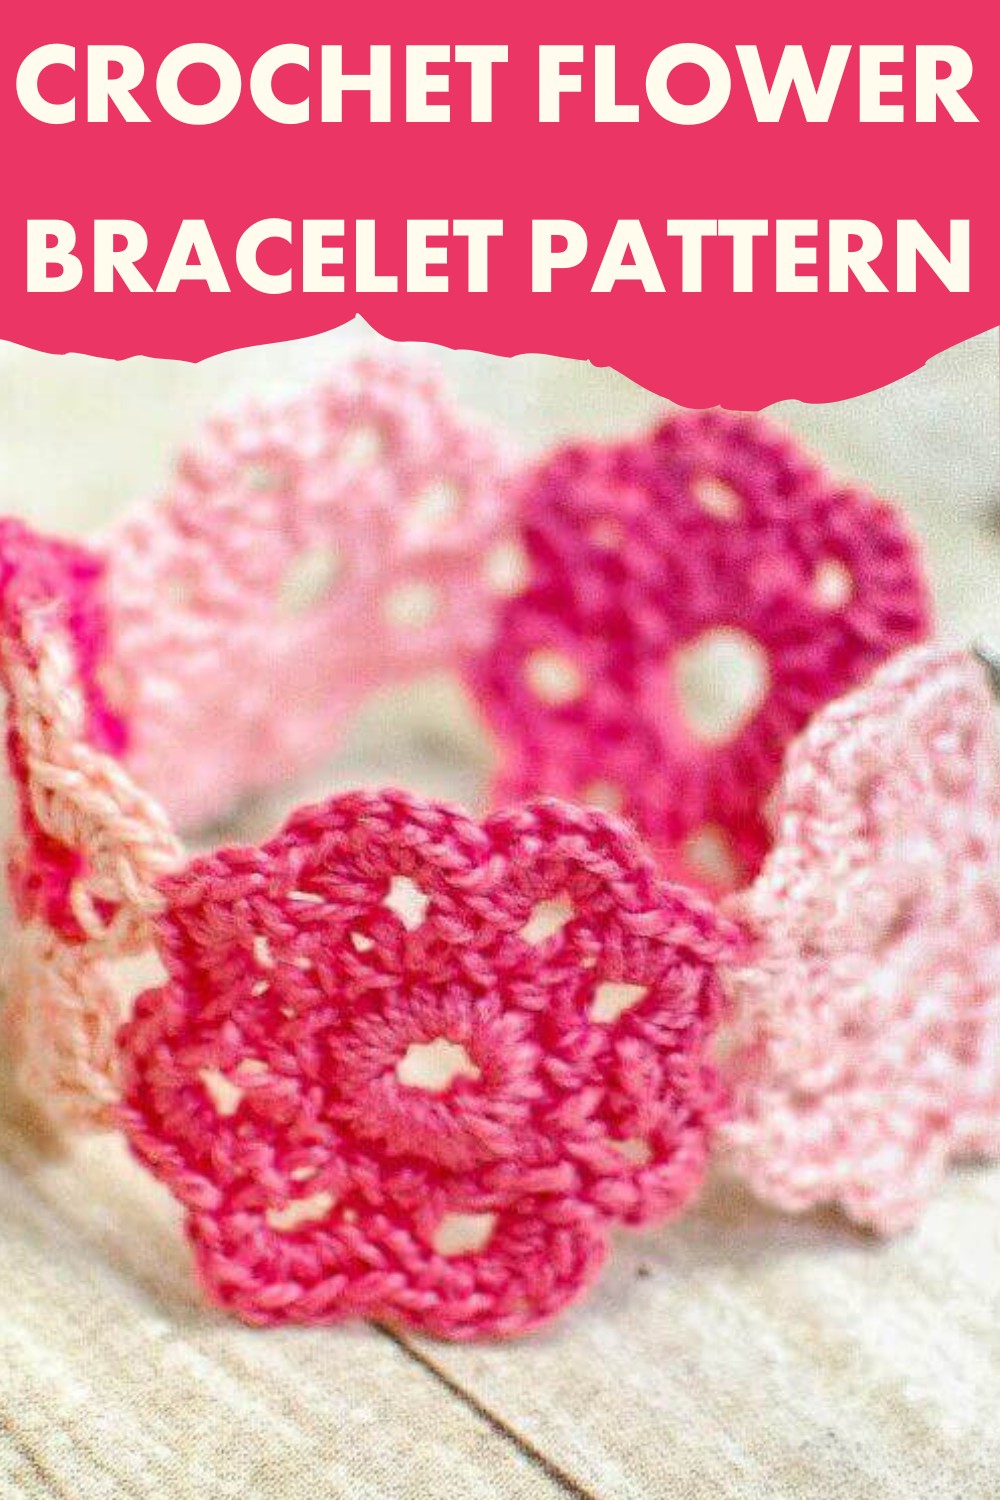 Crochet Flower Bracelet Pattern